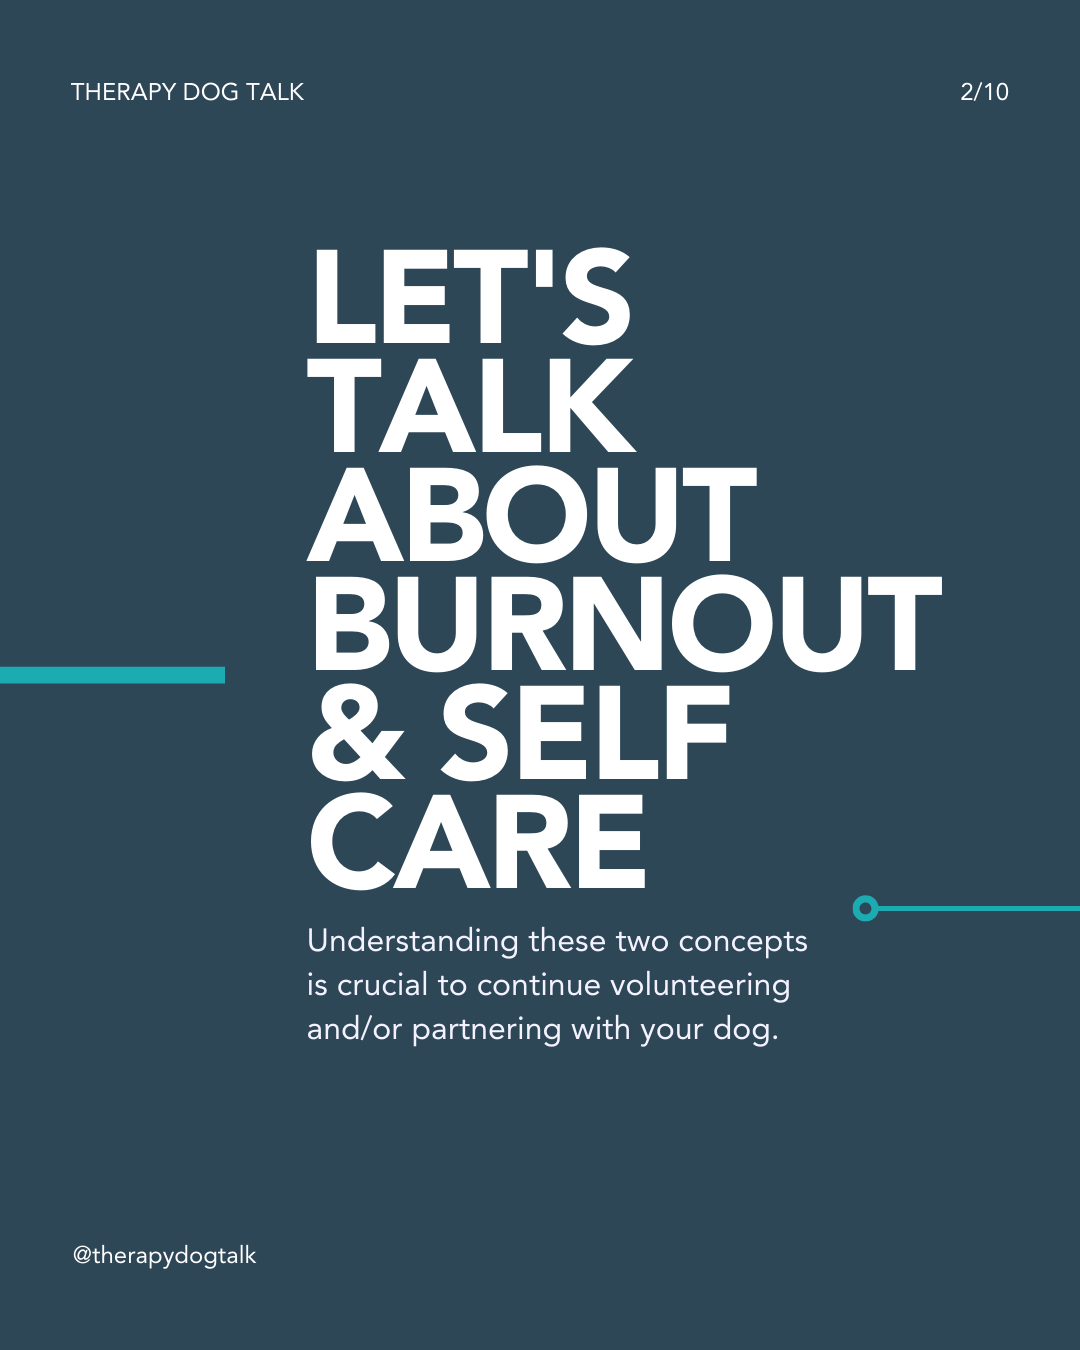 Let's talk about burnout & self care.